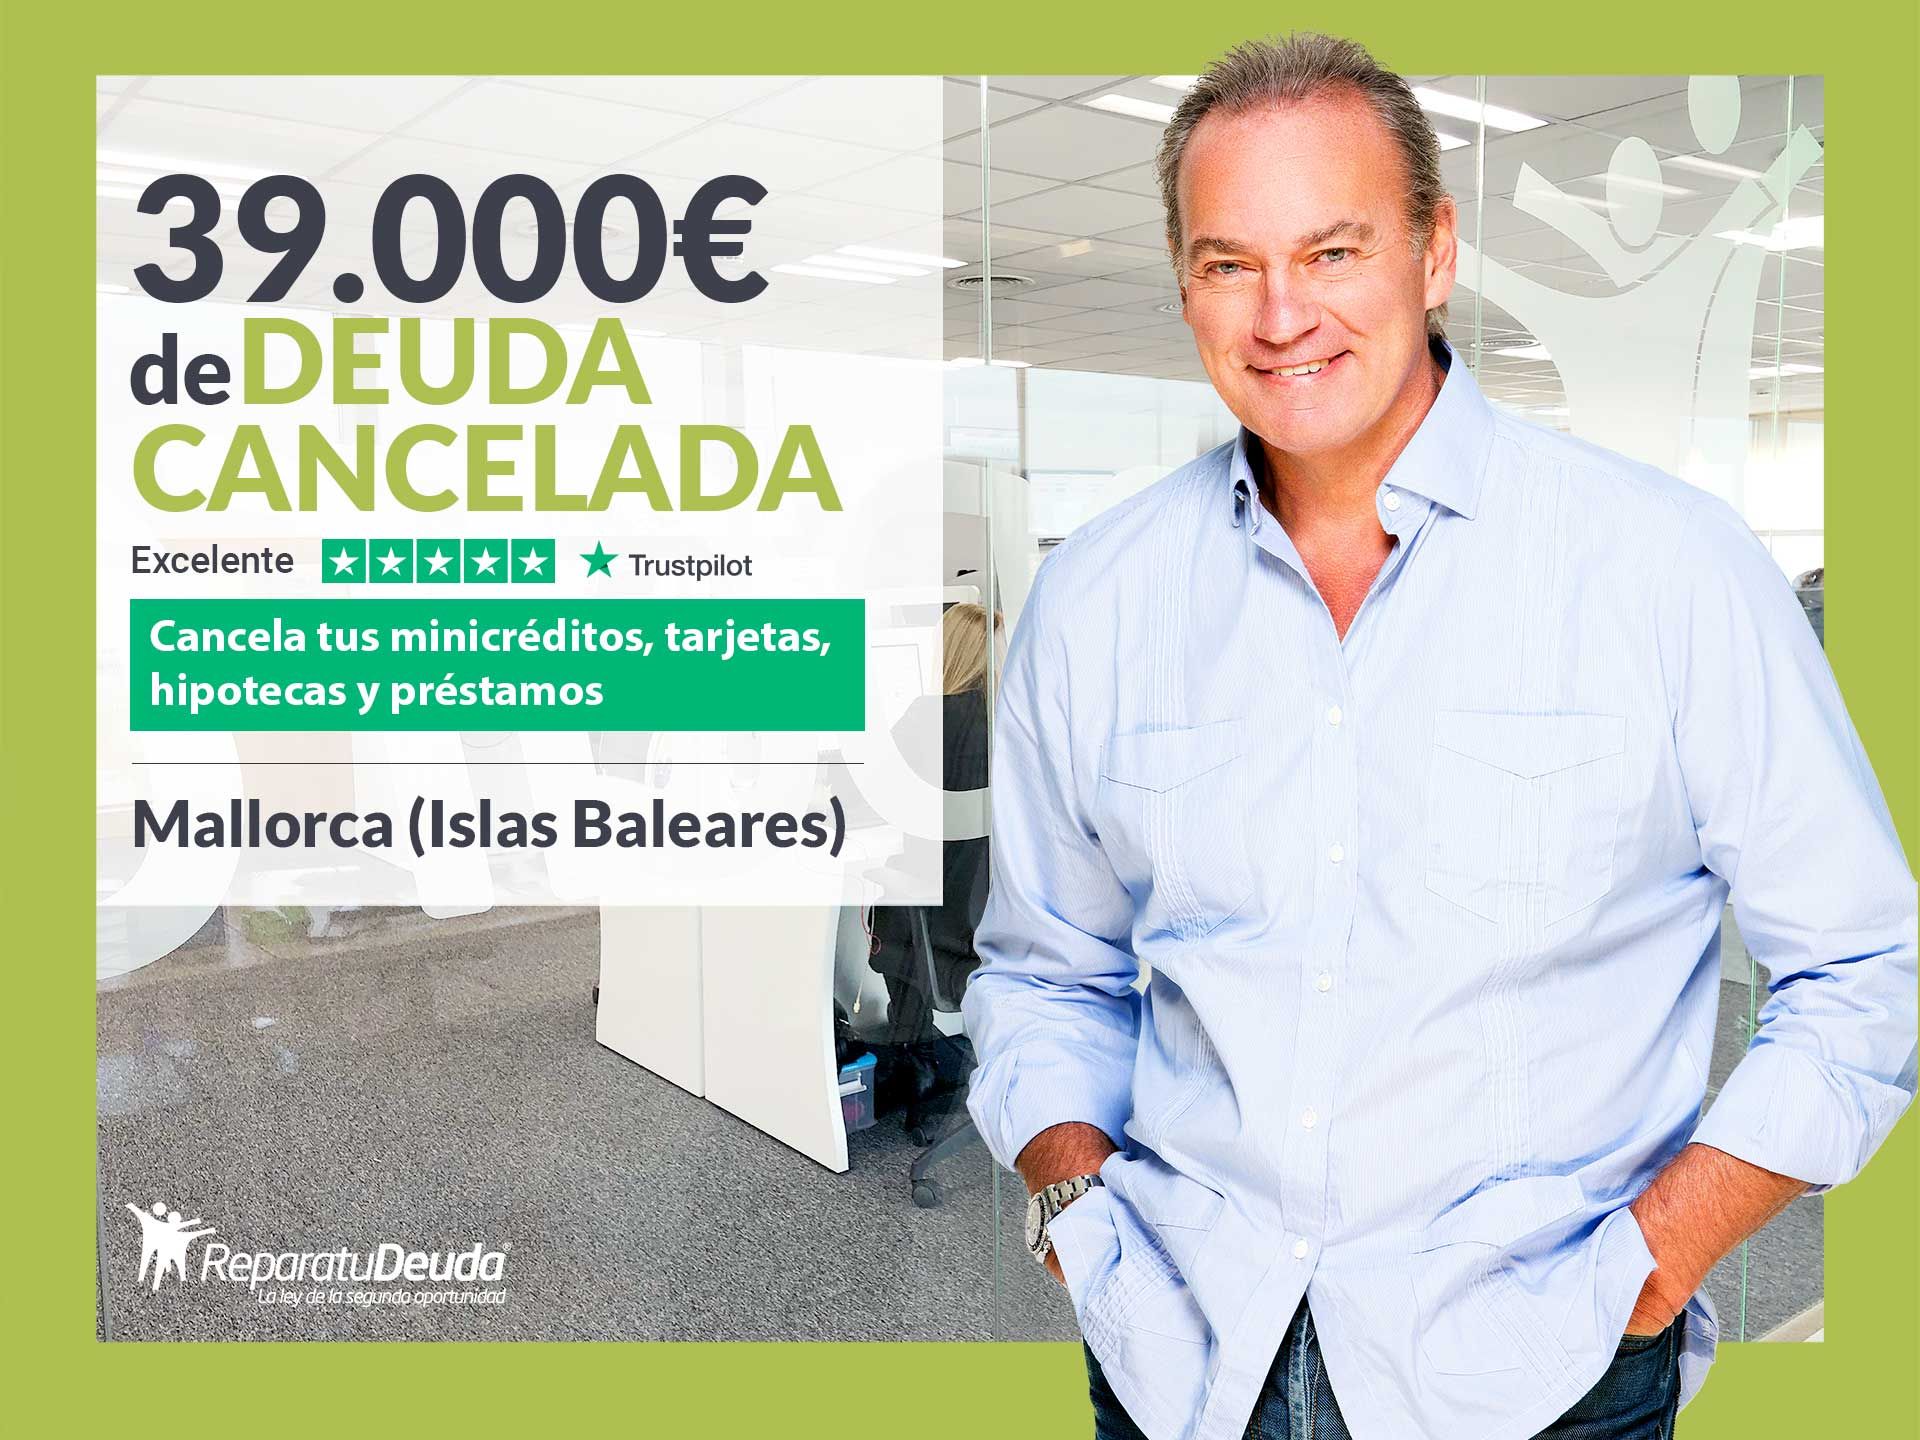 Repara tu Deuda Abogados cancela 39.000? en Mallorca (Baleares) gracias a la Ley de Segunda Oportunidad